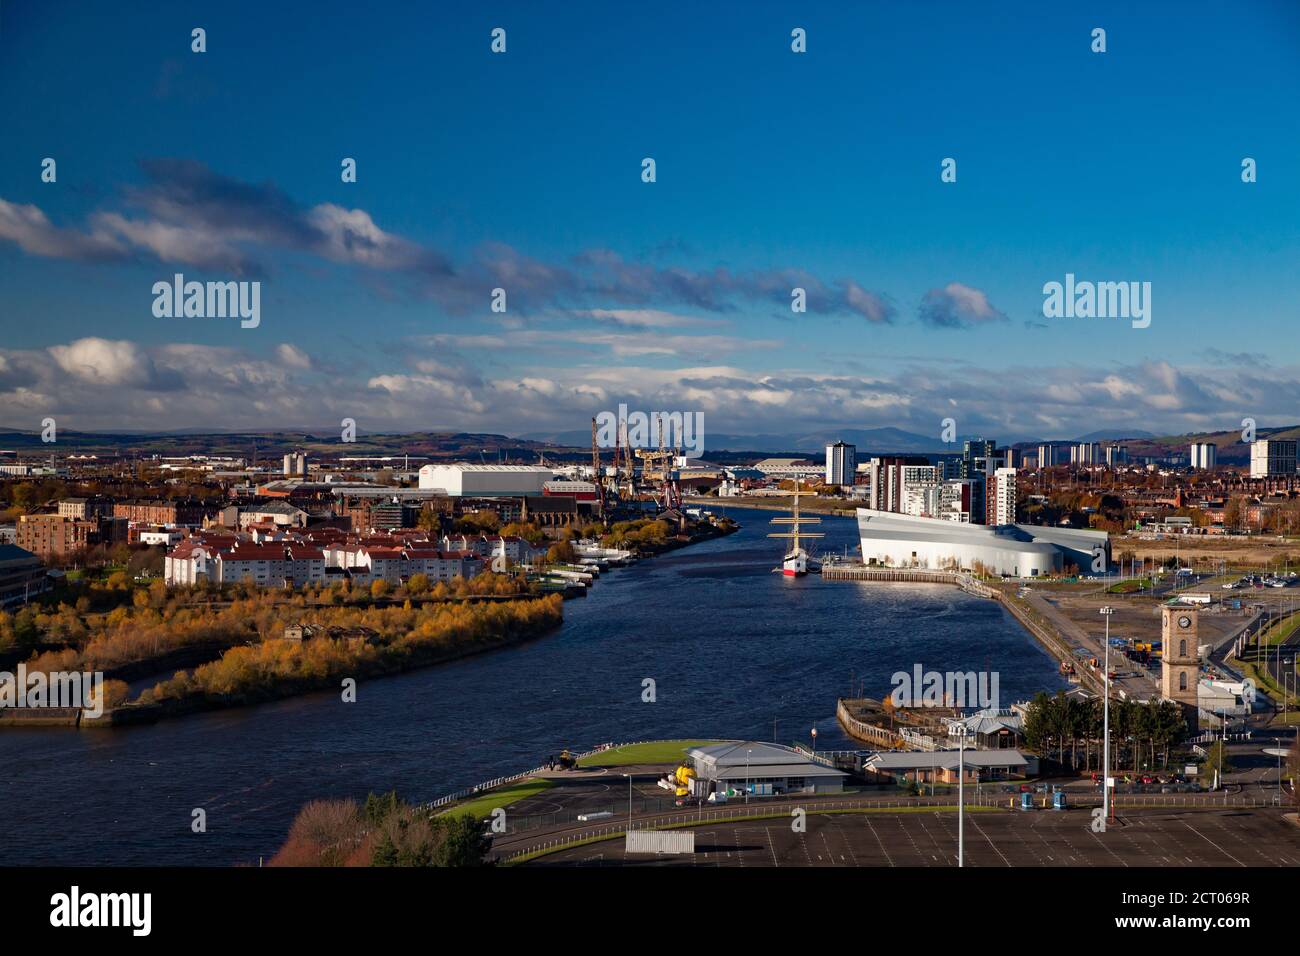 Glasgow/Écosse-13 novembre 2013 : chute dans la ville. Rive de la rivière Clyde. Musée Riverside et le Tall Ship à Riverside. Vue panoramique. Arbres jaunes. Banque D'Images